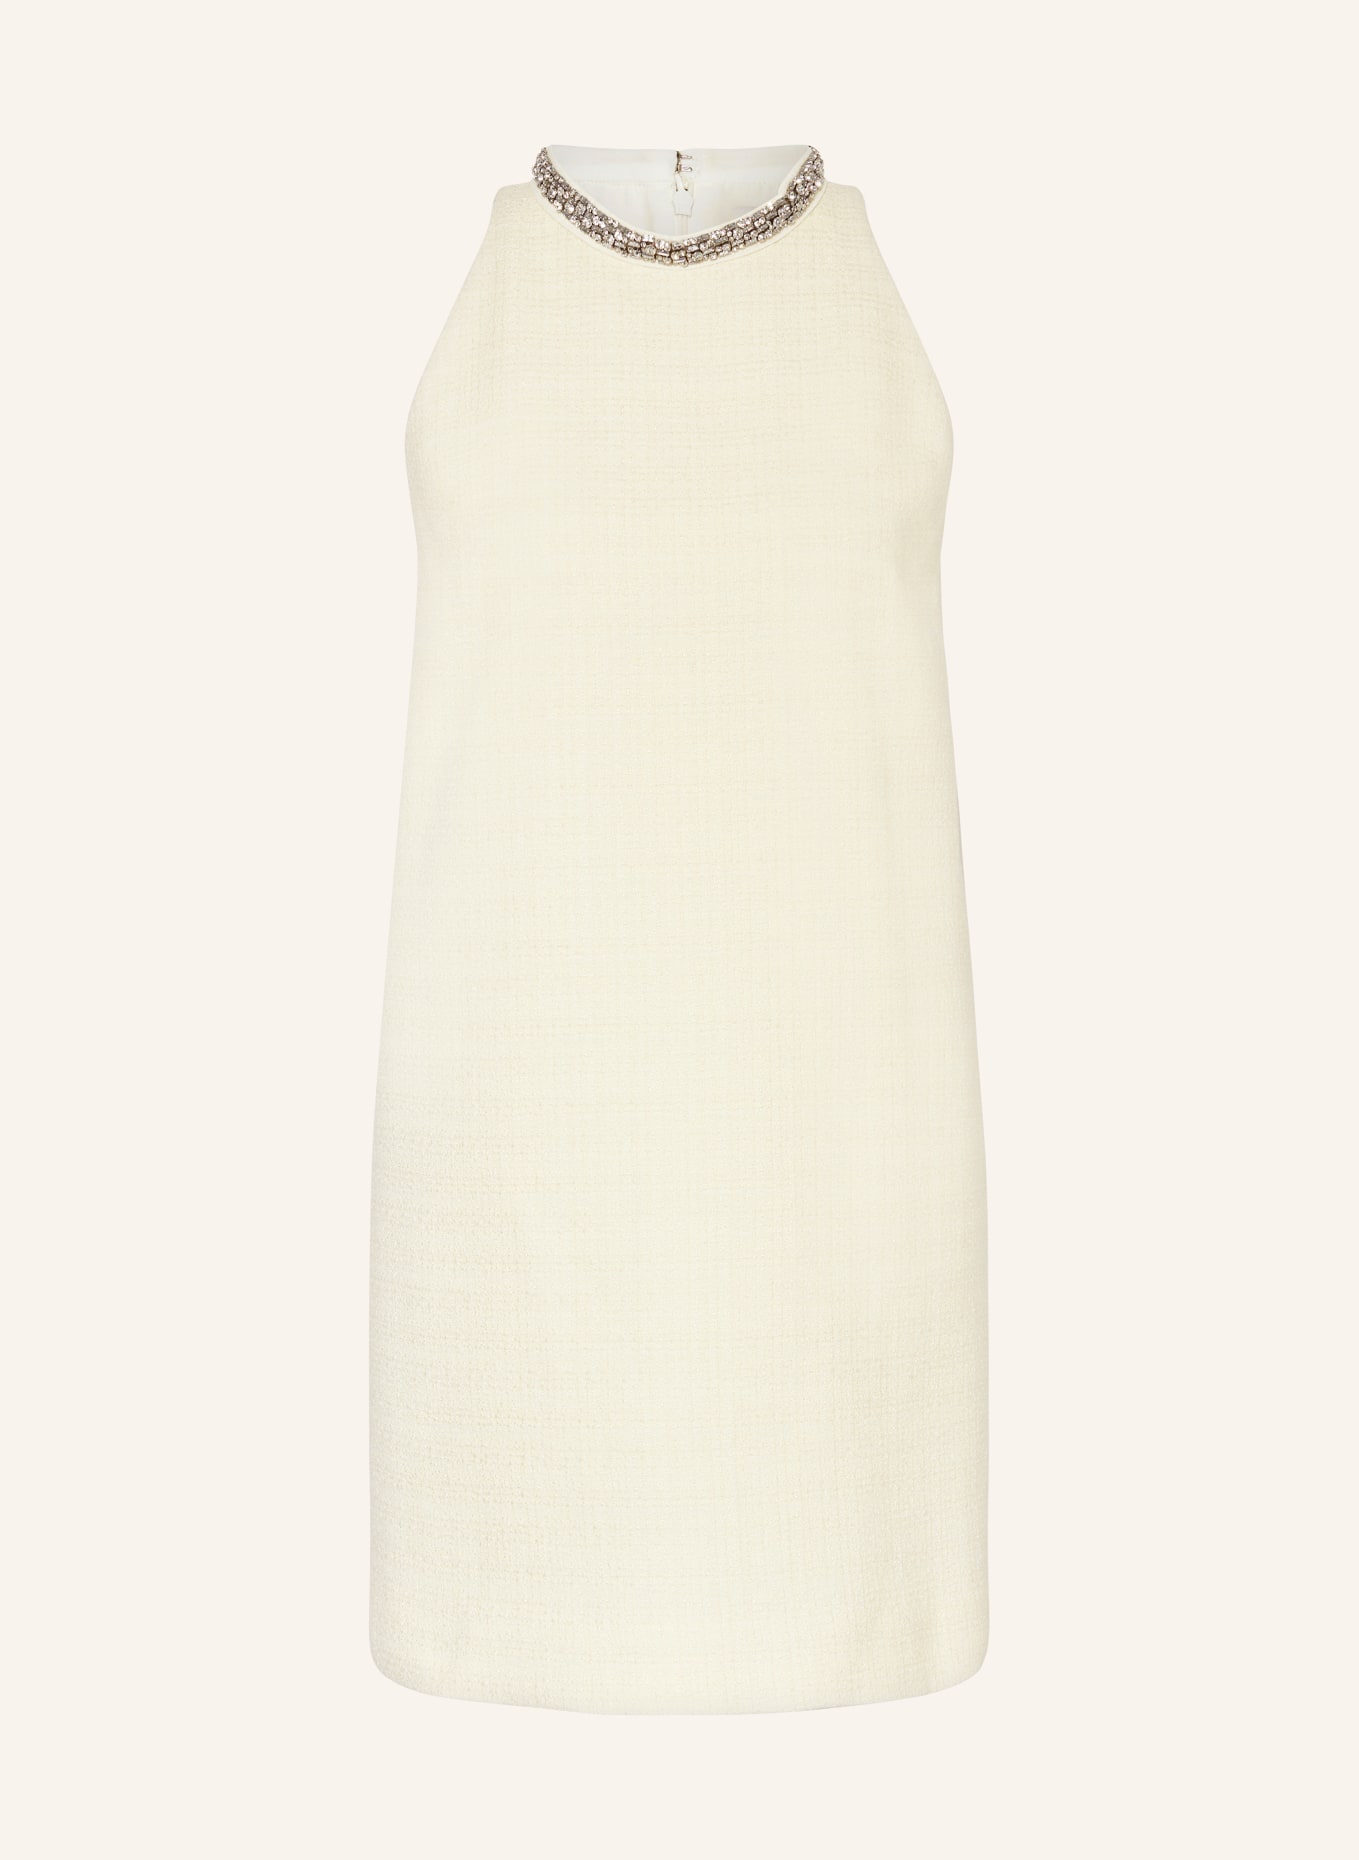 SANDRO Tweed-Kleid mit Schmucksteinen, Farbe: ECRU (Bild 1)